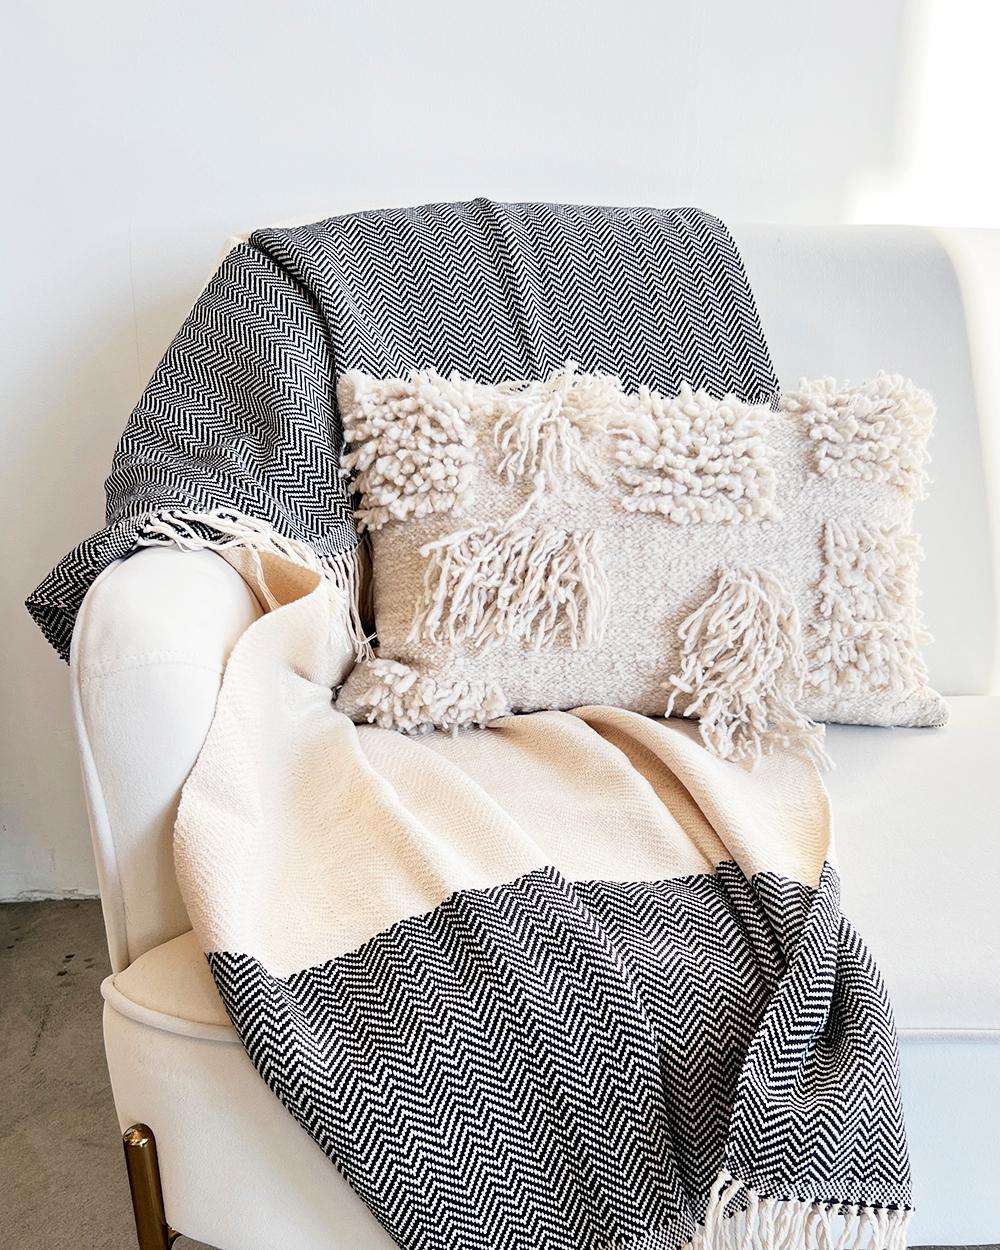 Eine knackige Baumwolldecke für Ihr Zuhause
Der Amano Throw besteht aus einer Bio-Baumwollmischung und wird mit fachmännischer Präzision handgefertigt. Das Fischgrätmuster eignet sich perfekt, um jedem Schlaf- oder Wohnzimmer einen klaren und